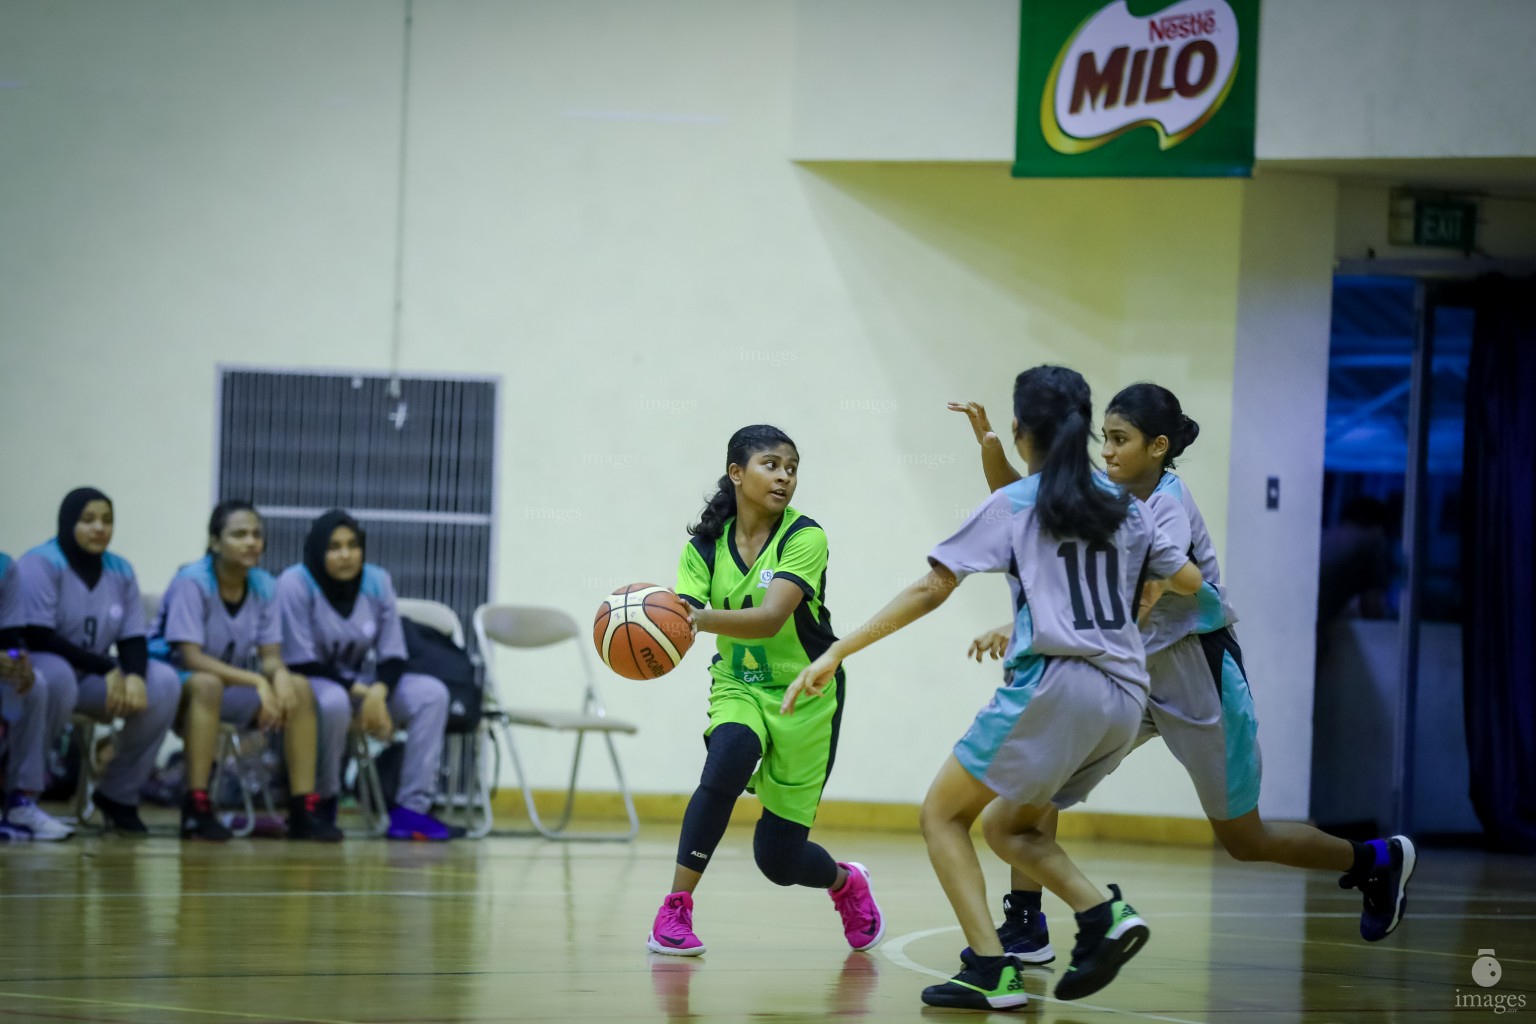 MILO Interschool Basket Tournament 2018 (11th April 2018)